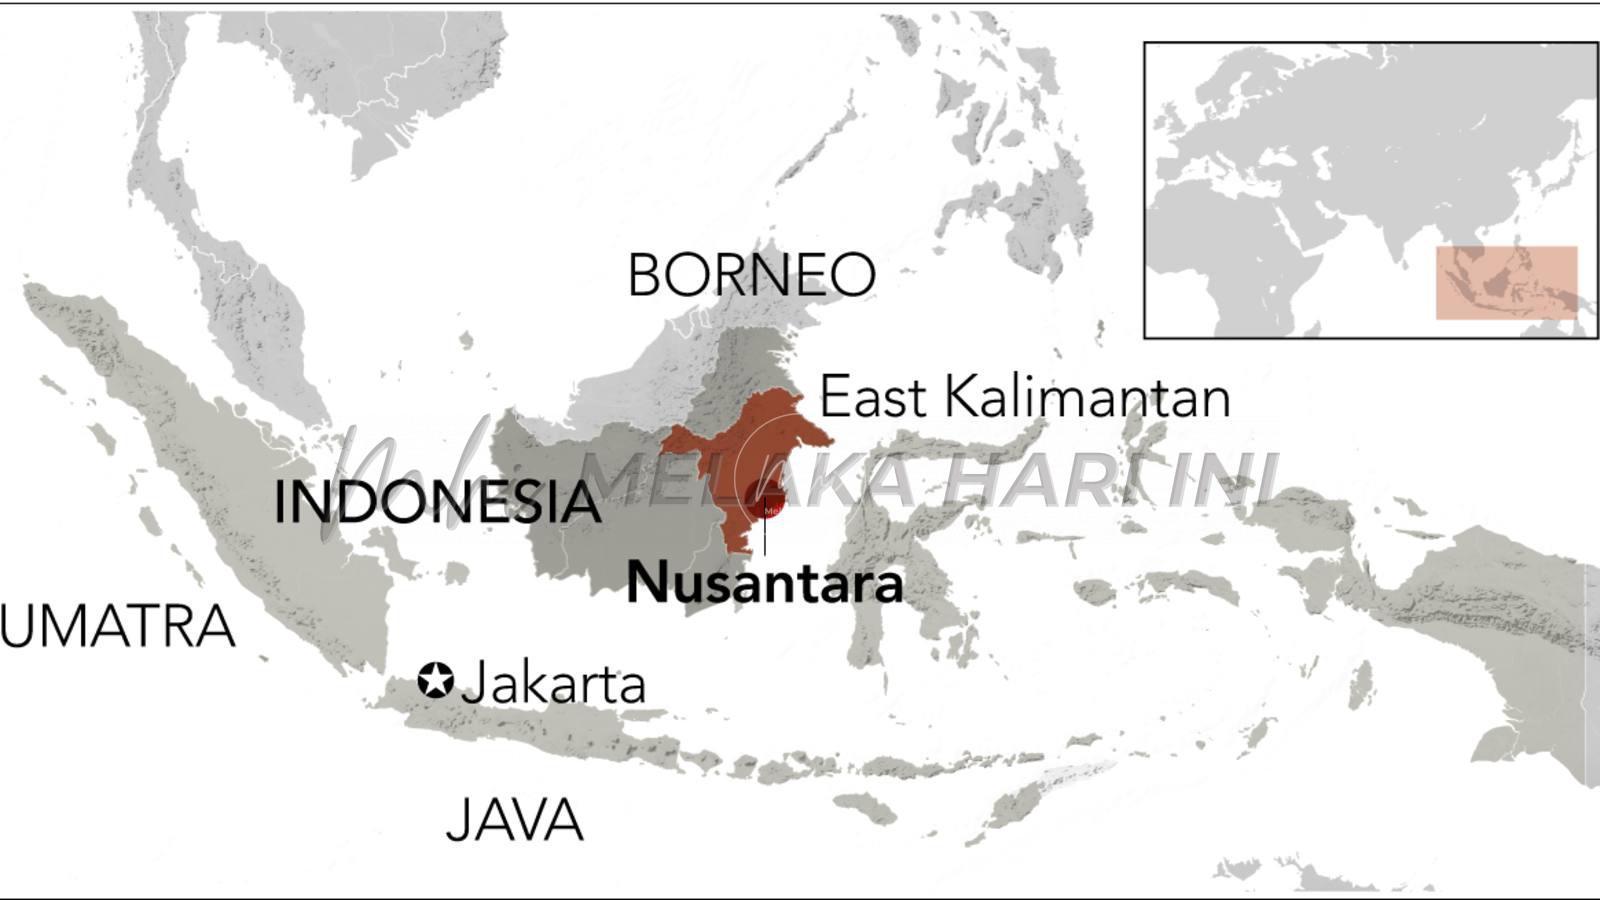 Of Nusantara and Nusantaria: Palapa and Other Names